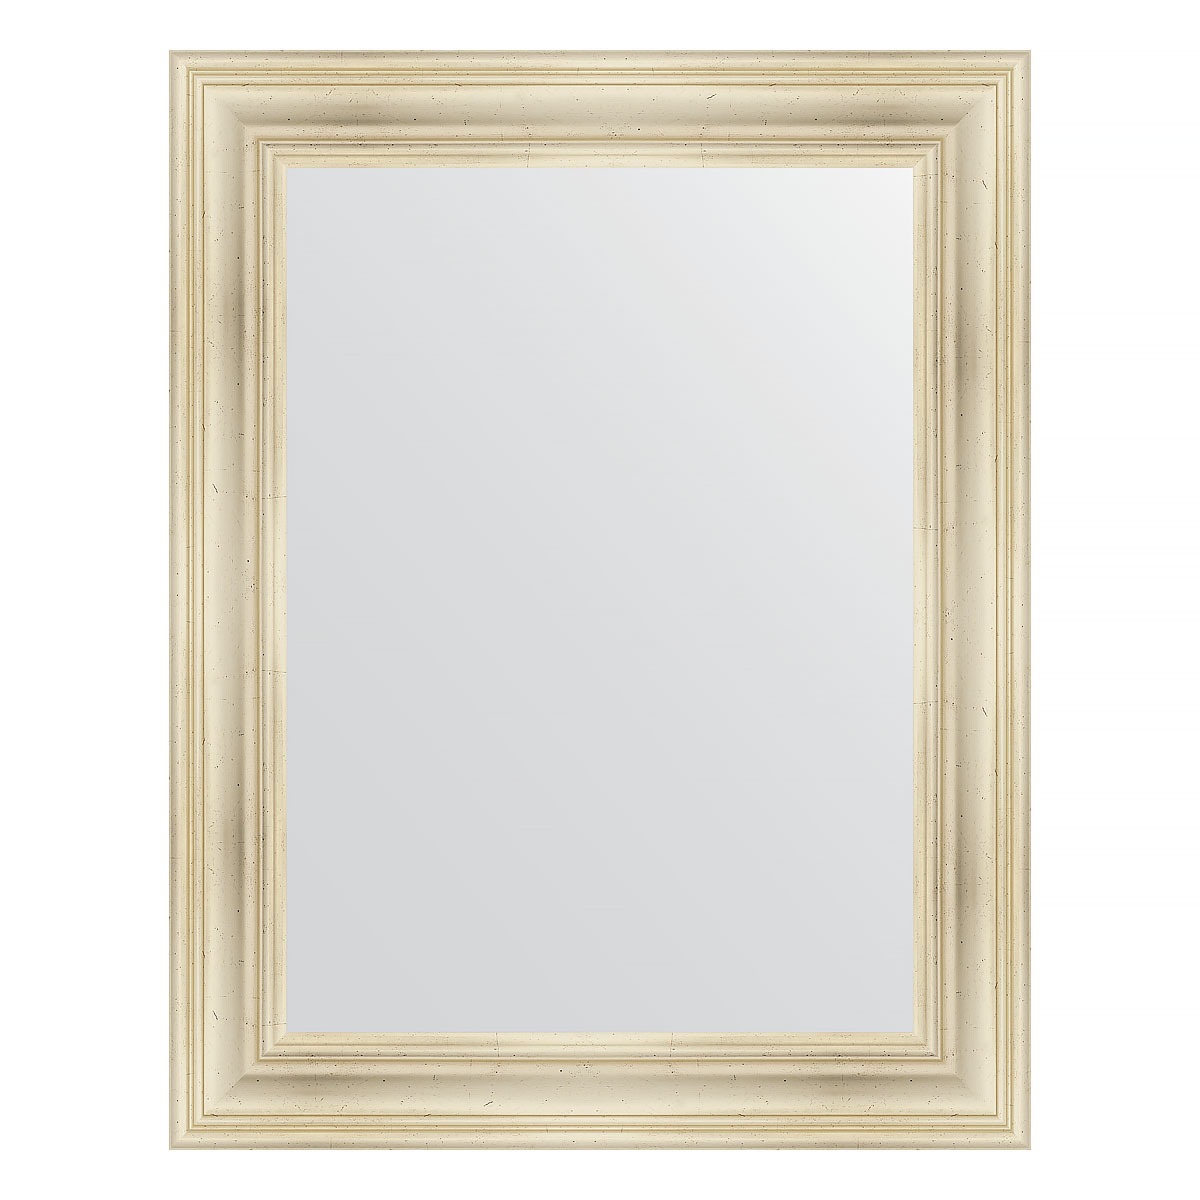 Зеркало в багетной раме Evoform травленое серебро 99 мм 72х92 см зеркало в багетной раме evoform алебастр 48 мм 72х92 см